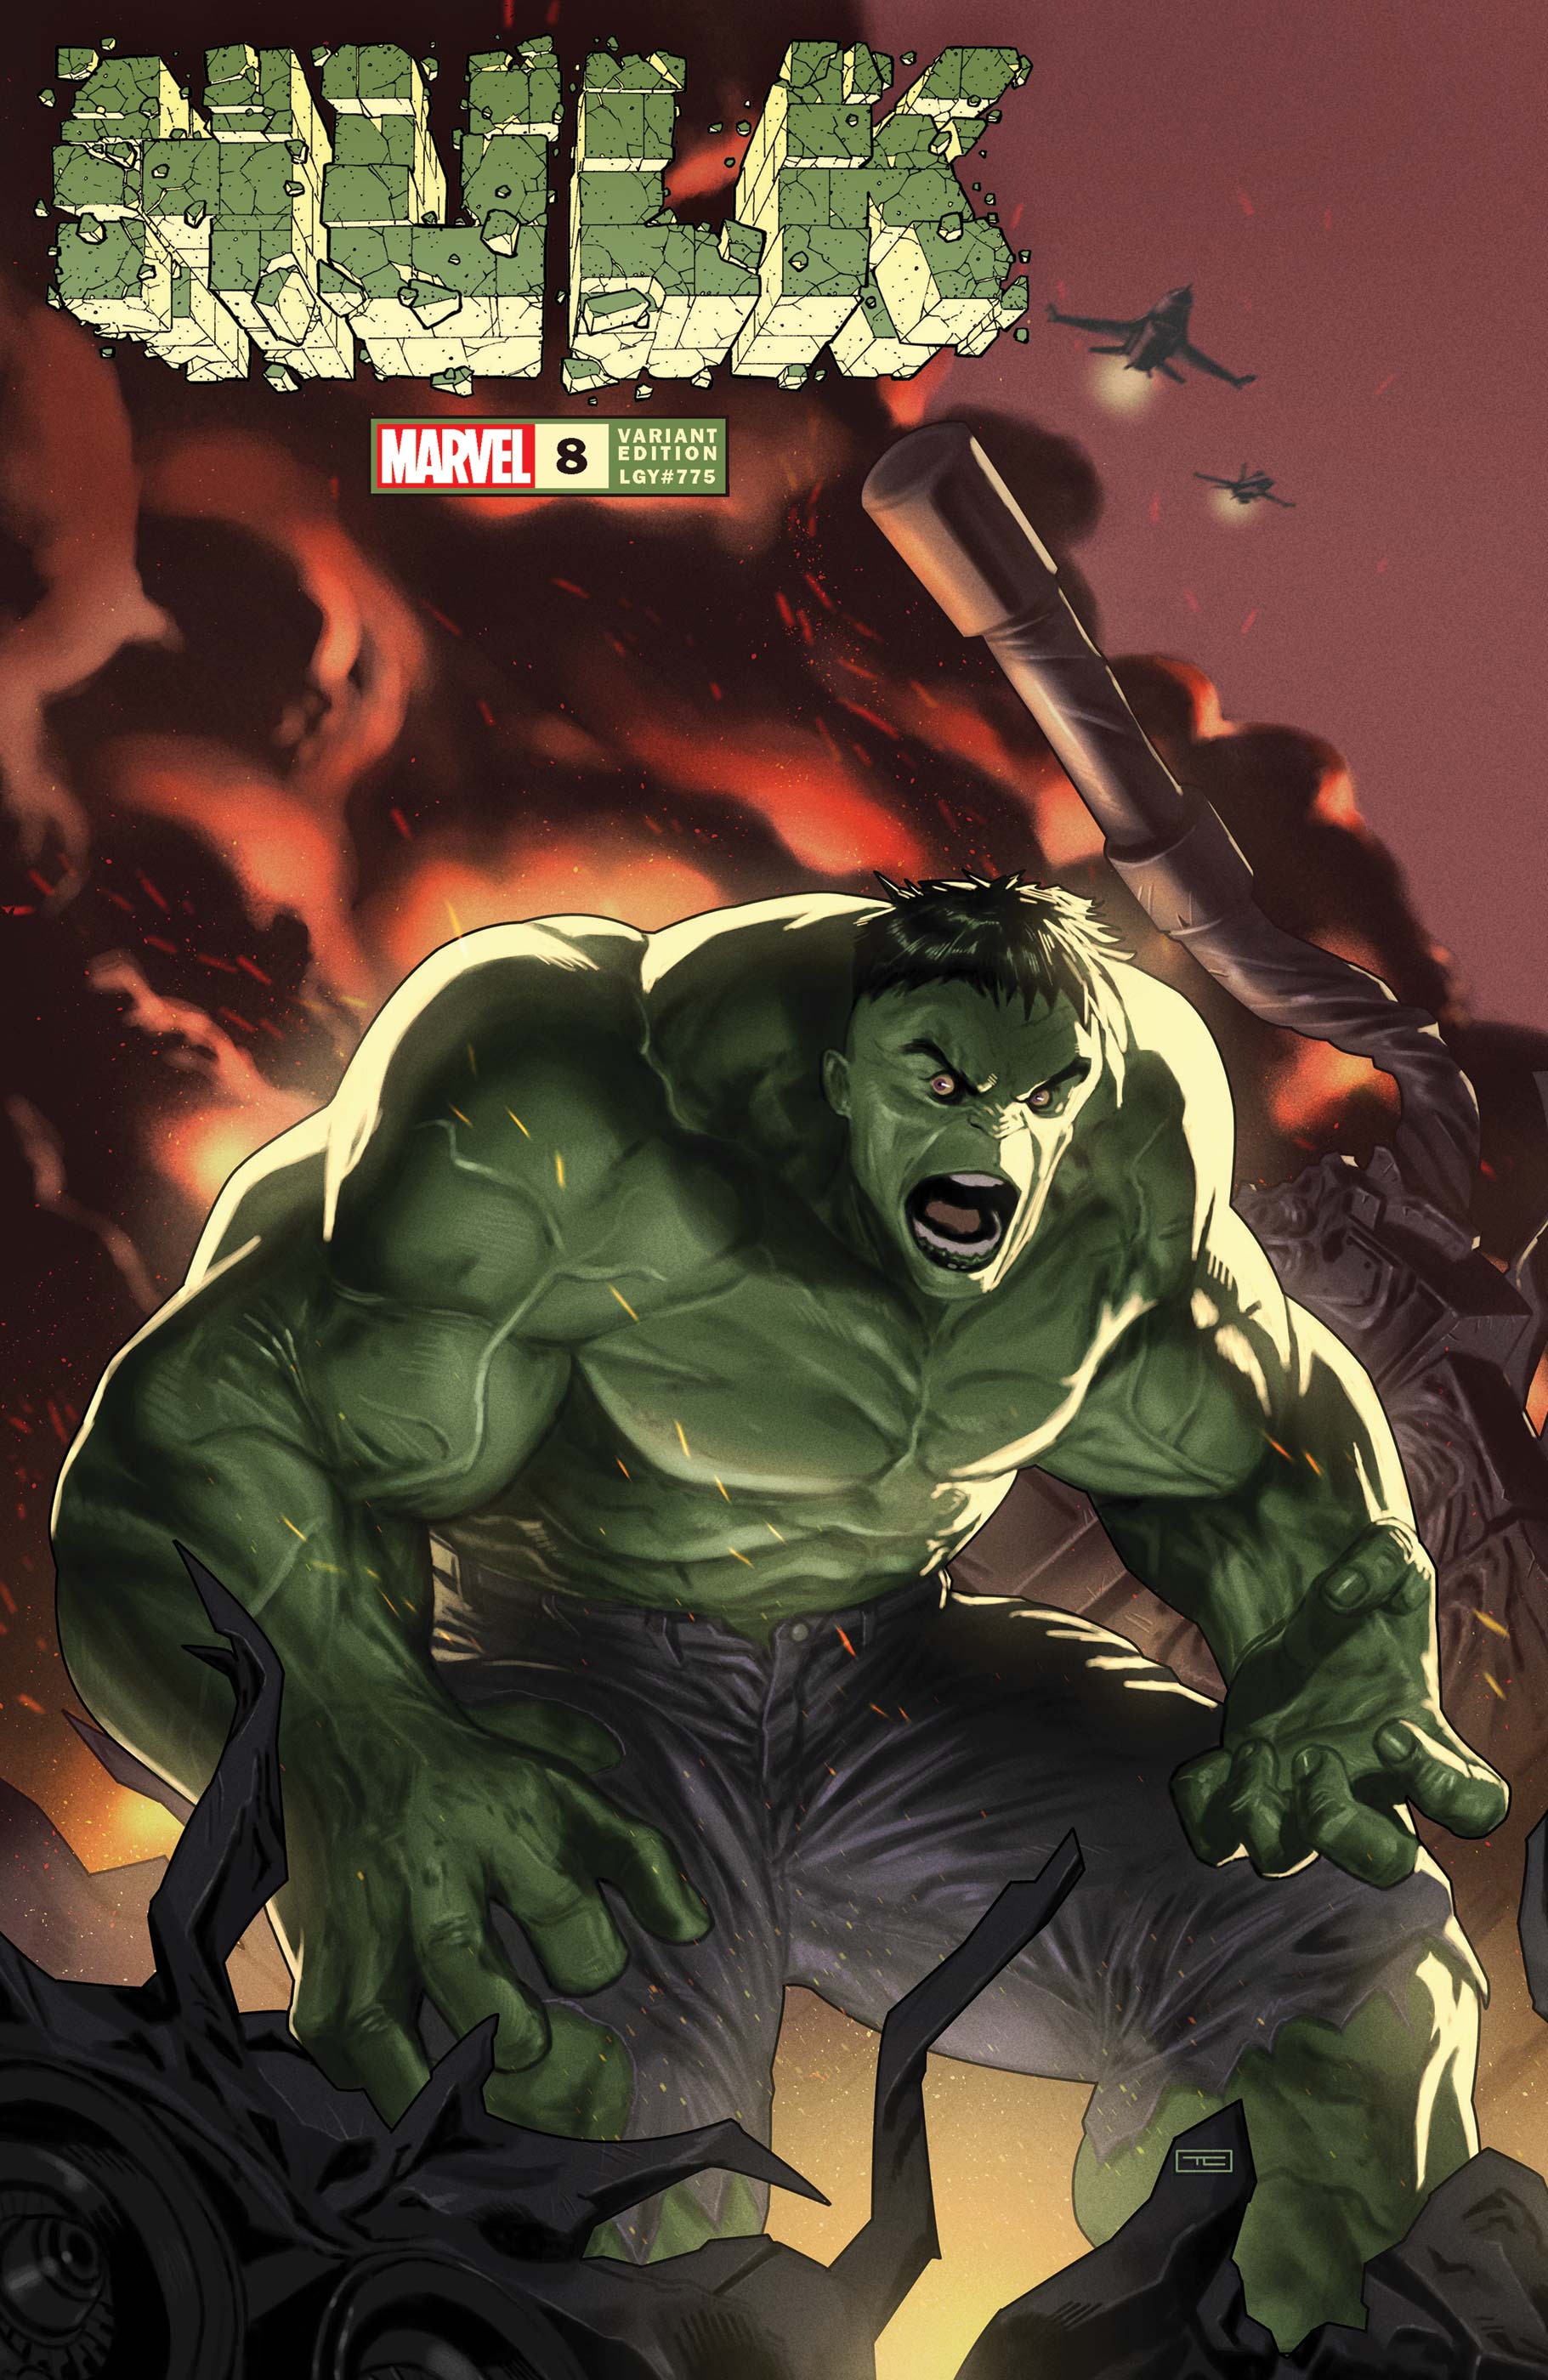 Hulk (2021) #8 (Variant)